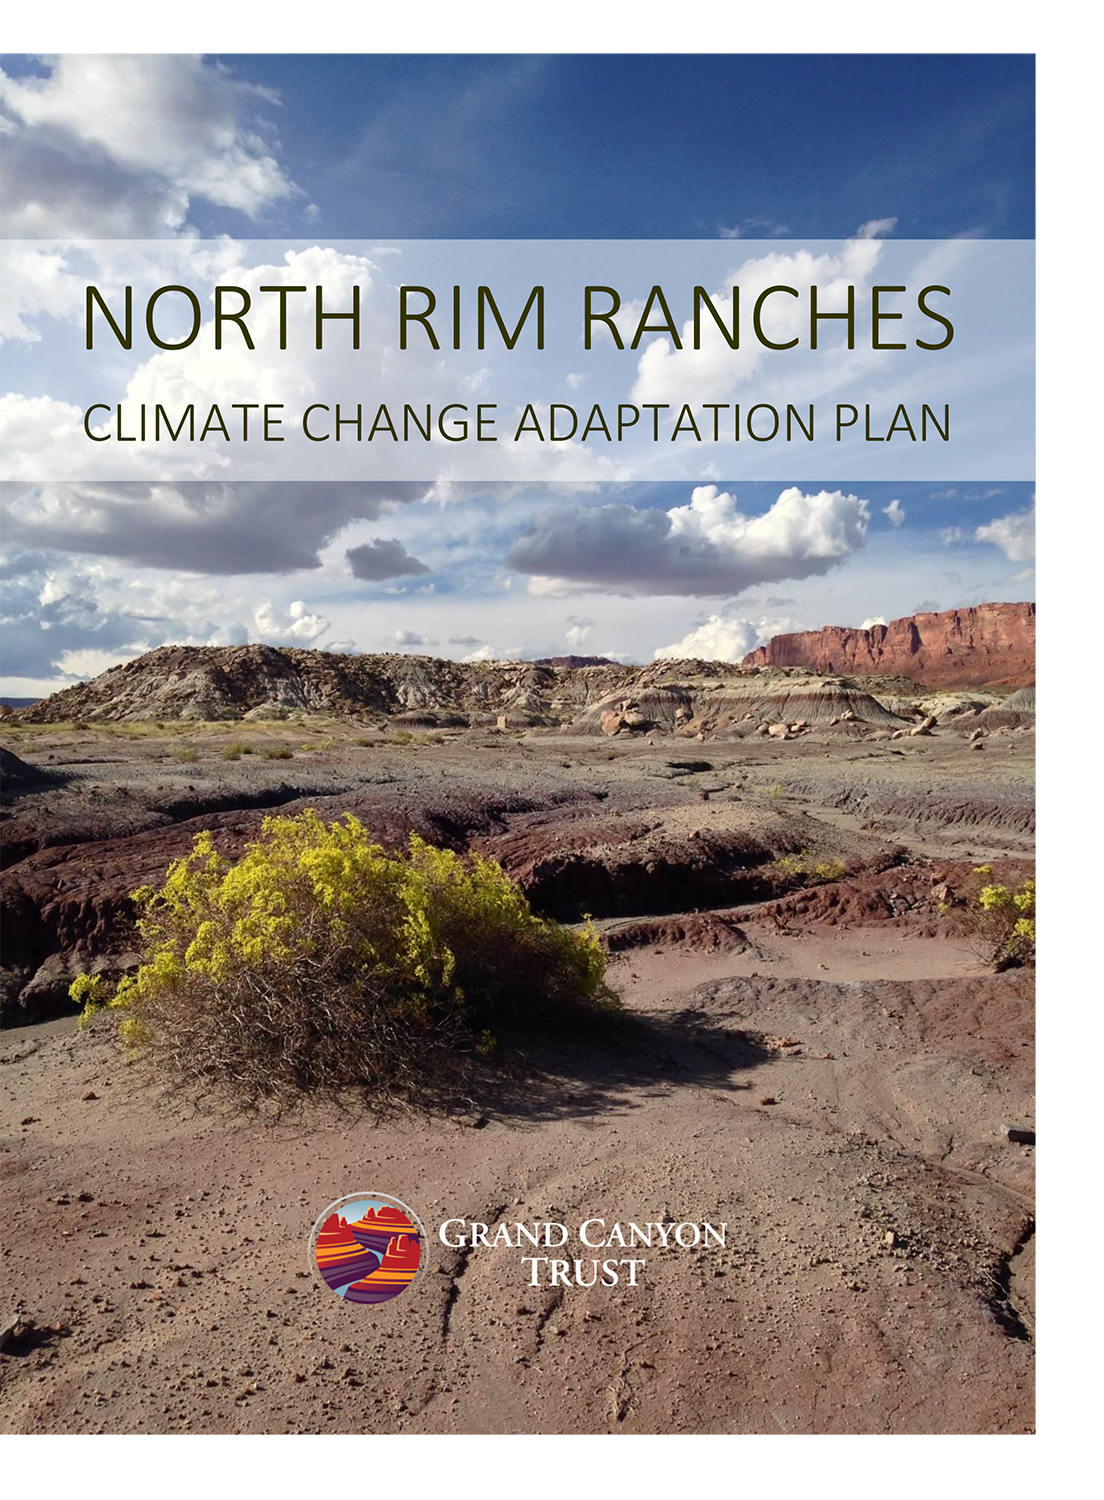 North Rim Ranches climate adaptation plan